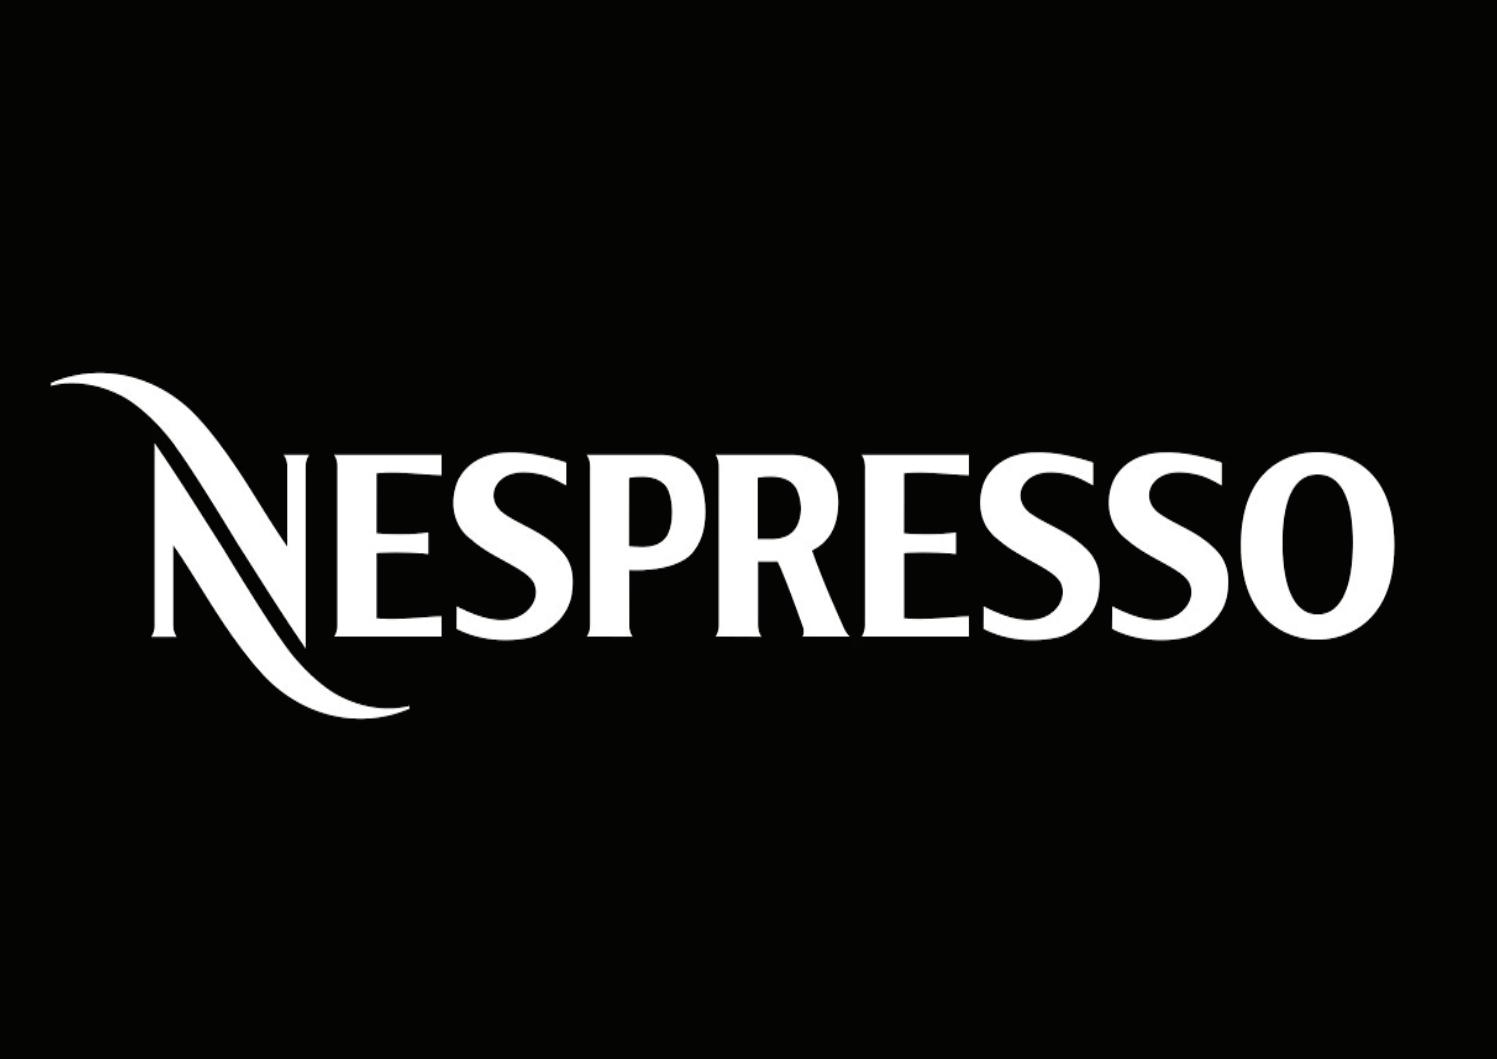 codice promo nespressonespresso codice scontobuono sconto nespresso